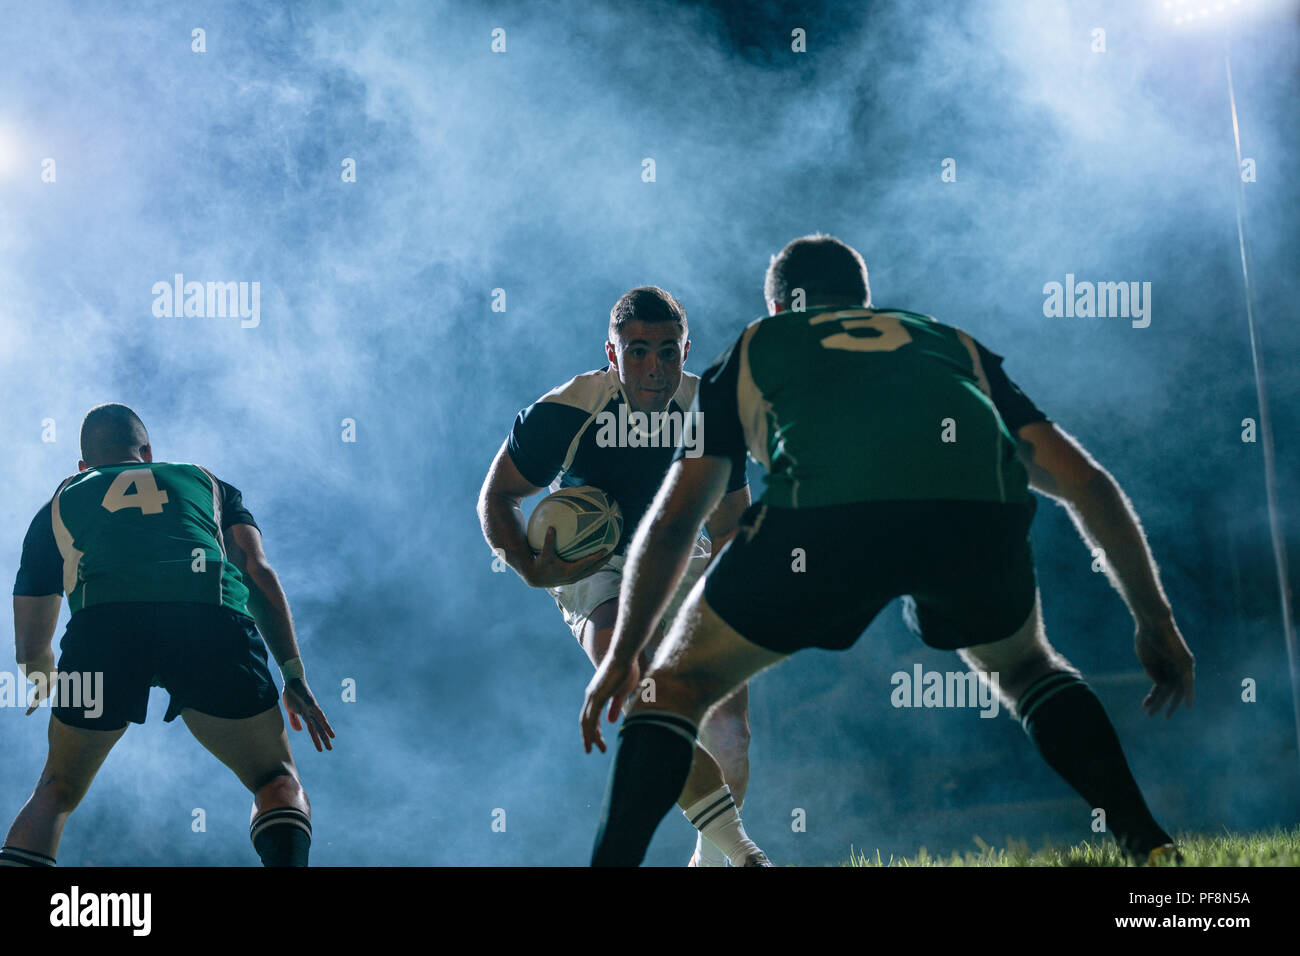 Professionelle rugby spieler läuft mit dem Ball und Gegner team Spieler, die versuchen, ihn auf einer Sport Arena während der Nacht Spiel zu blockieren. Stockfoto